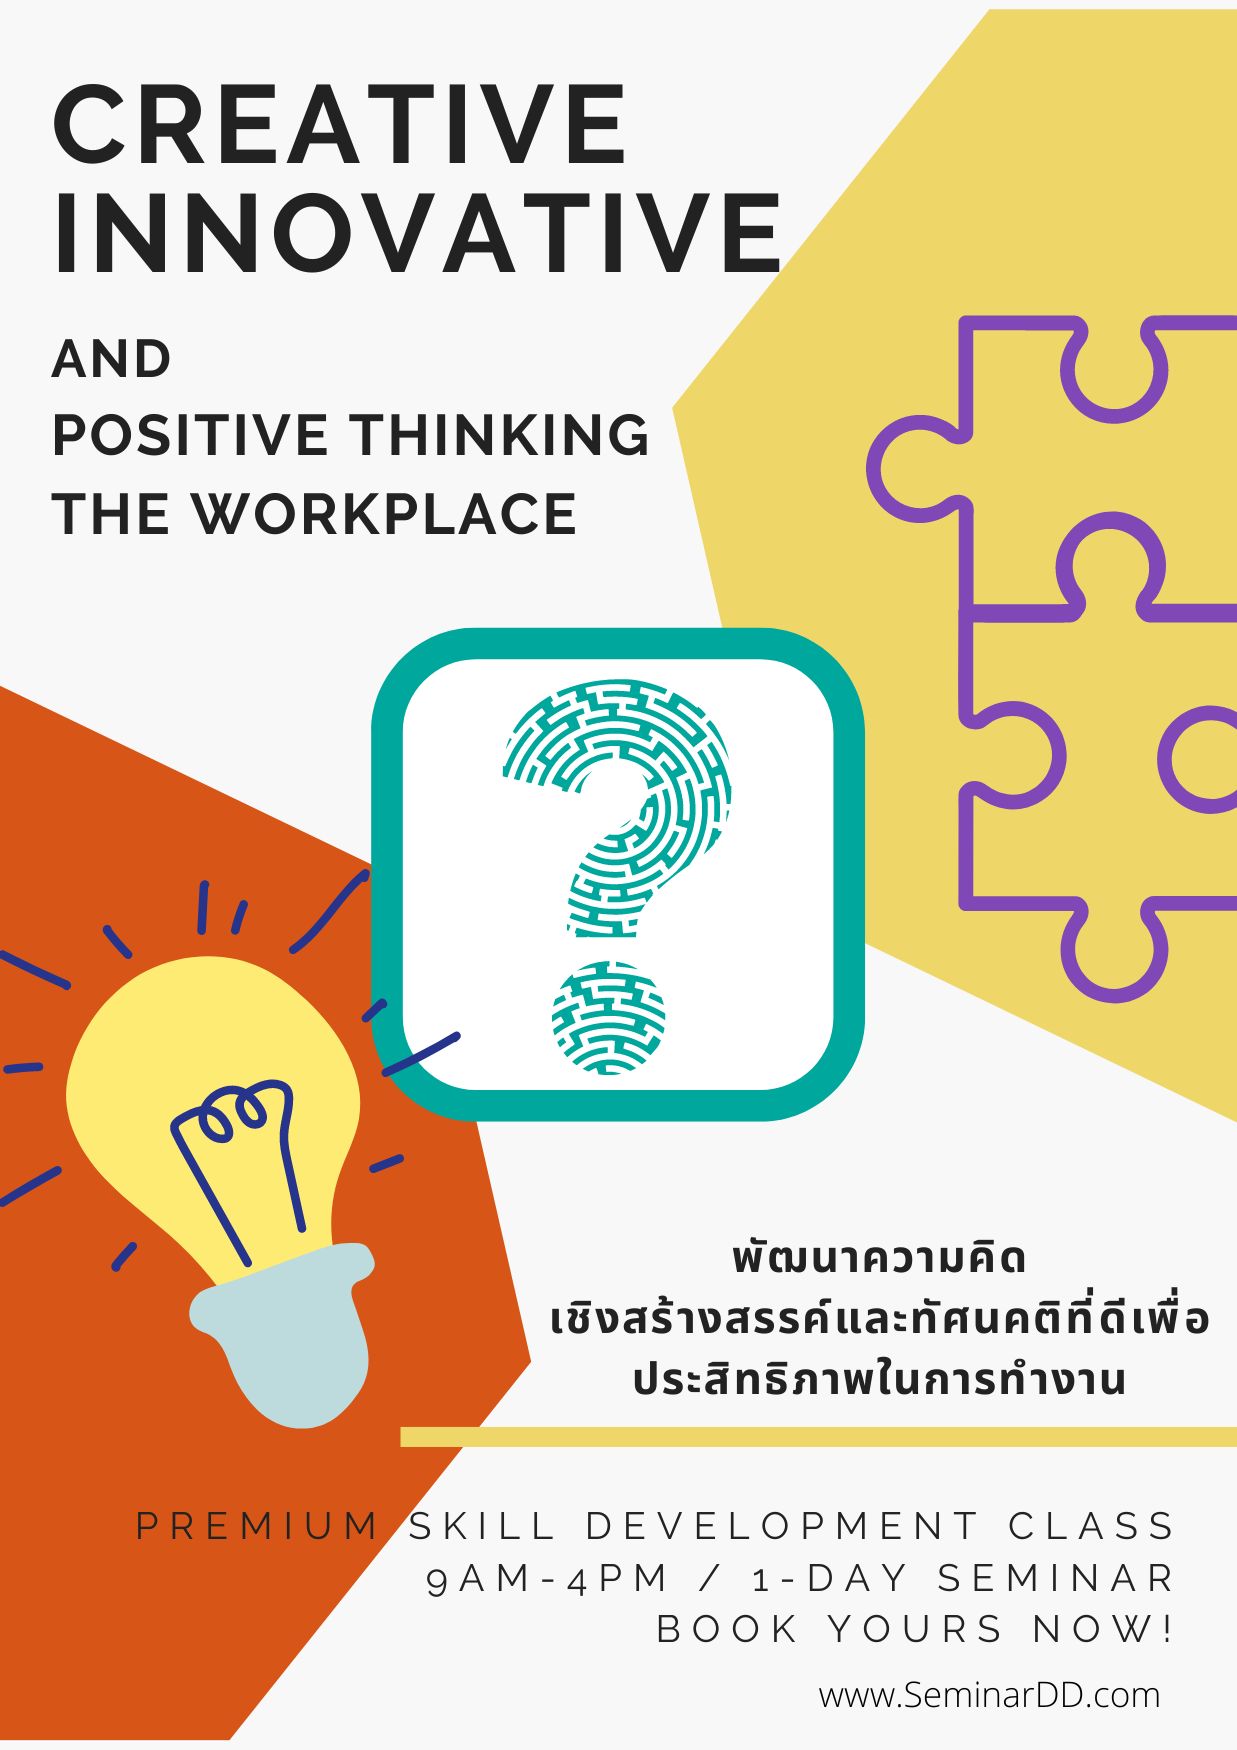 หลักสูตร พัฒนาความคิดเชิงสร้างสรรค์ และทัศนคติที่ดีเพื่อประสิทธิภาพการทำงาน ( Creative Innovative and Positive Thinking in the Workplace ) - อบรมในรูปแบบ online ผ่าน zoom